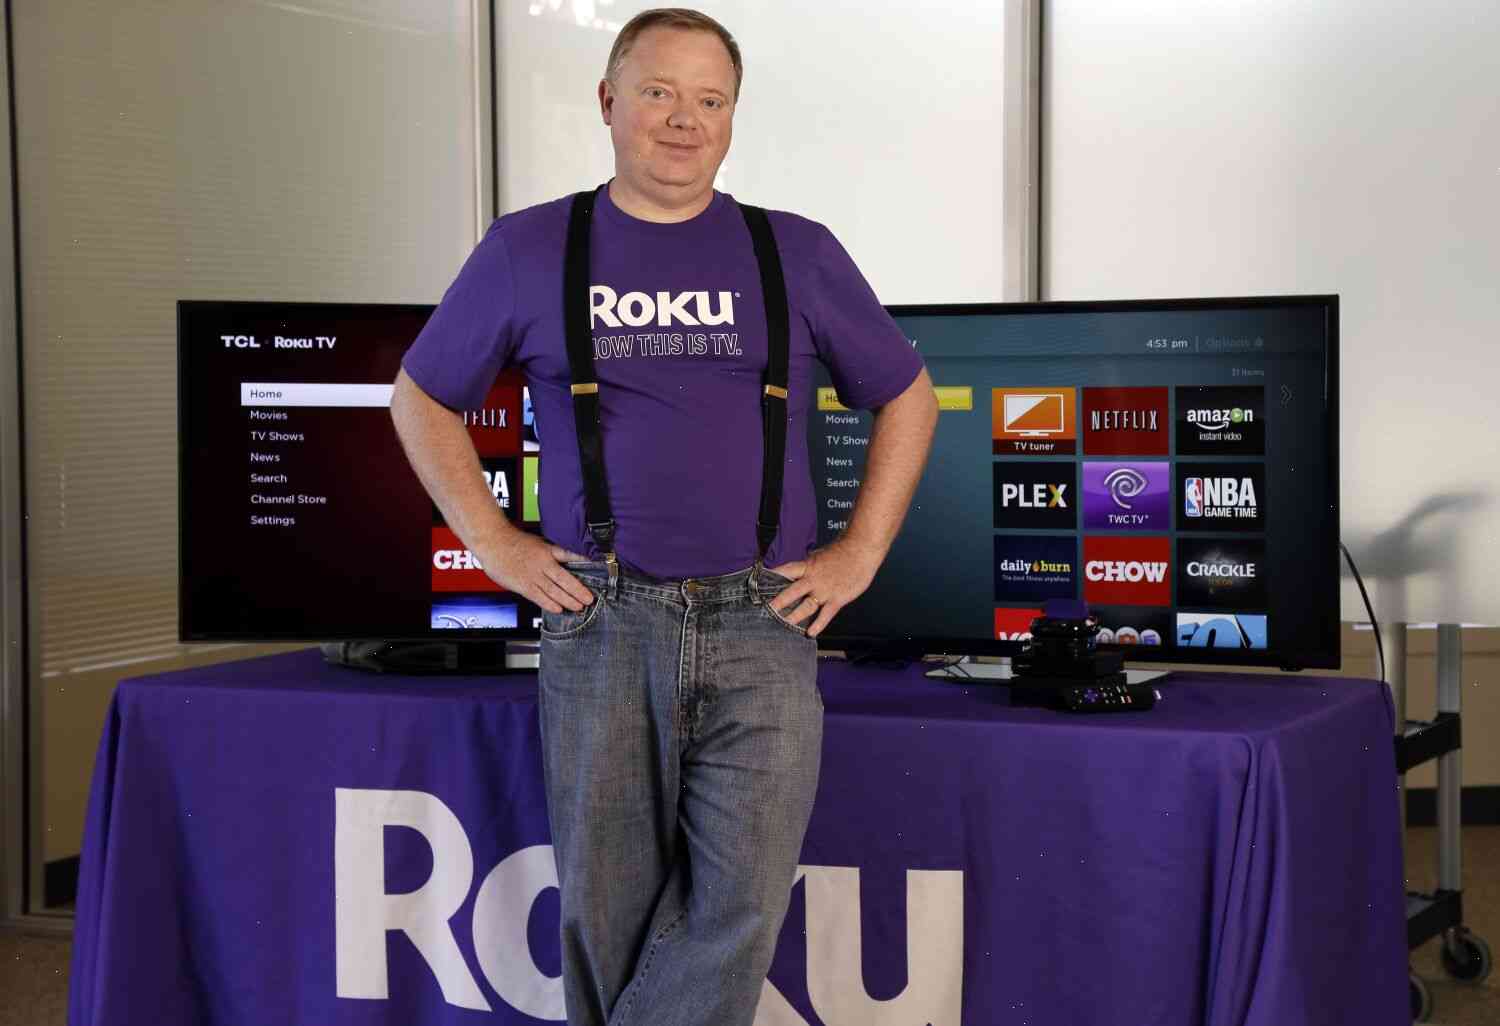 Roku announces job cuts after falling video ad market